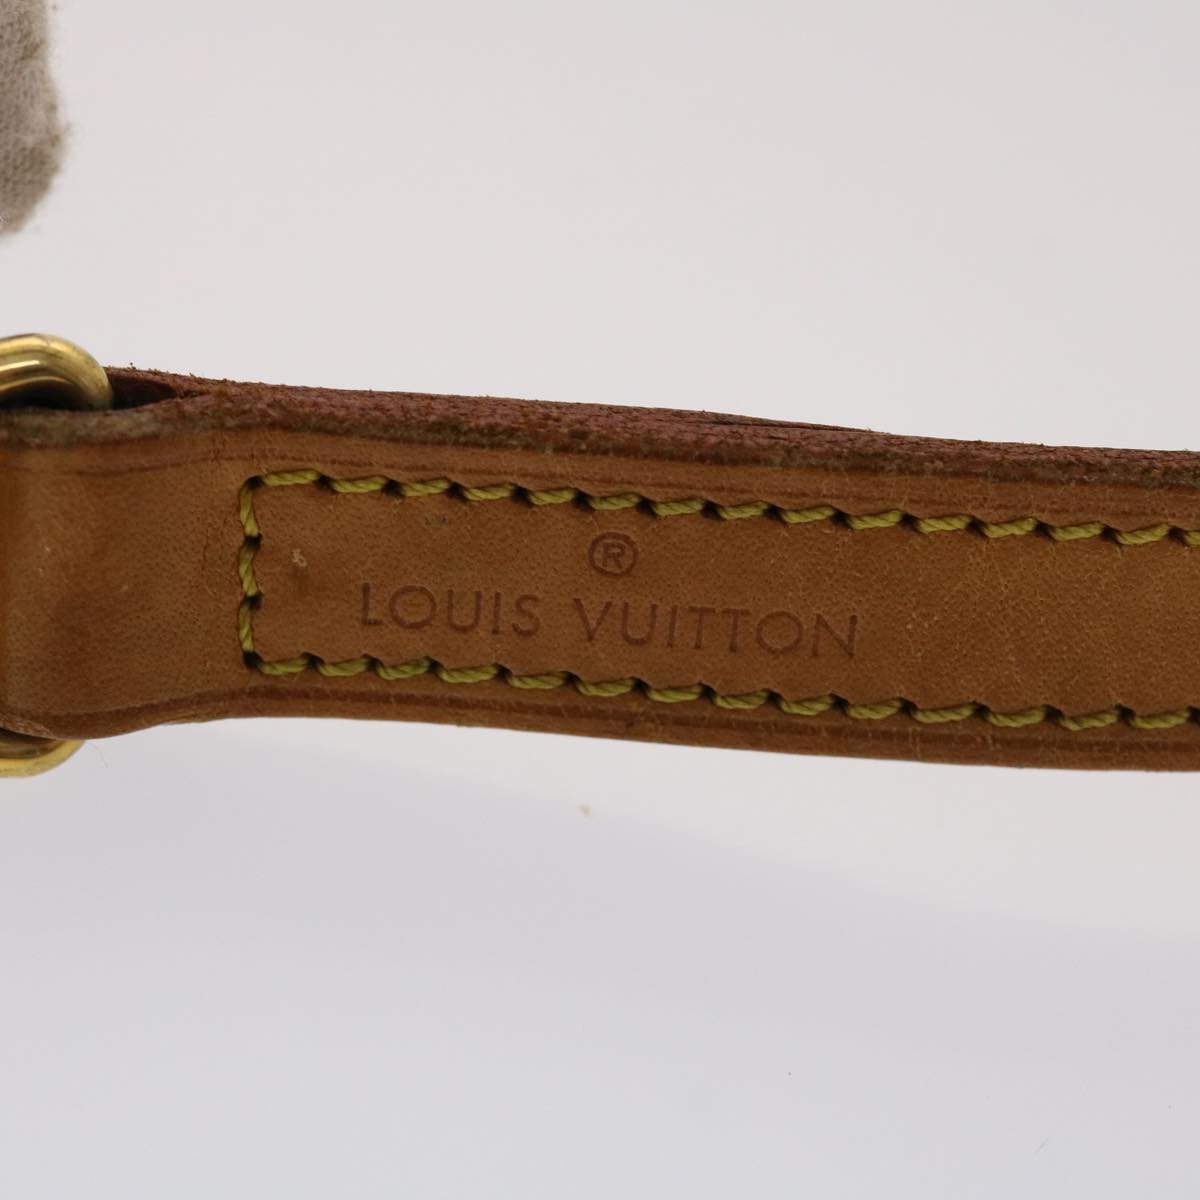 LOUIS VUITTON Shoulder Strap Leather 39.4"" Beige LV Auth 47926